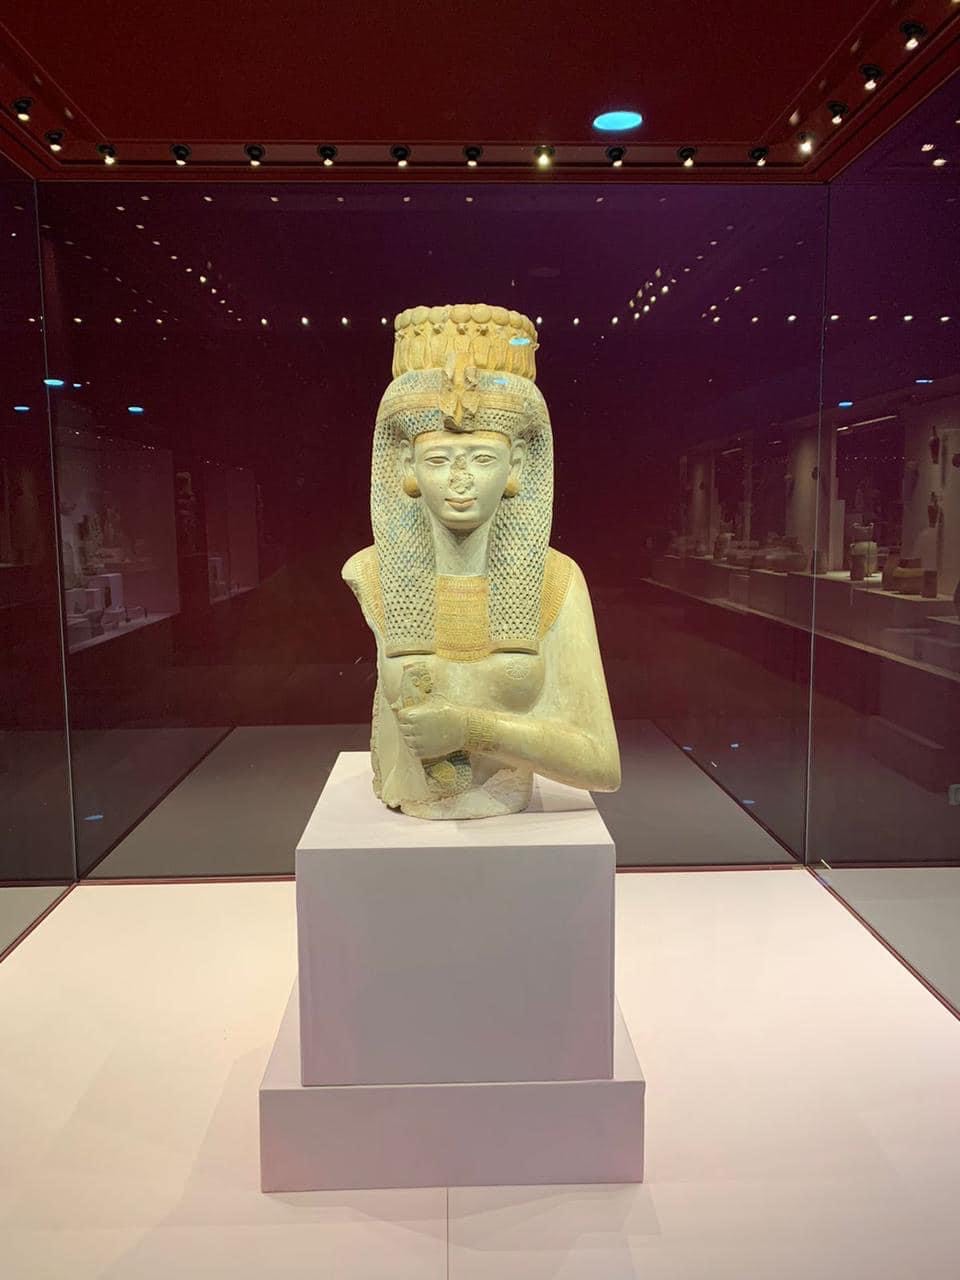  تمثال الملكة ميريت آمون بمتحف الغردقة  (2)